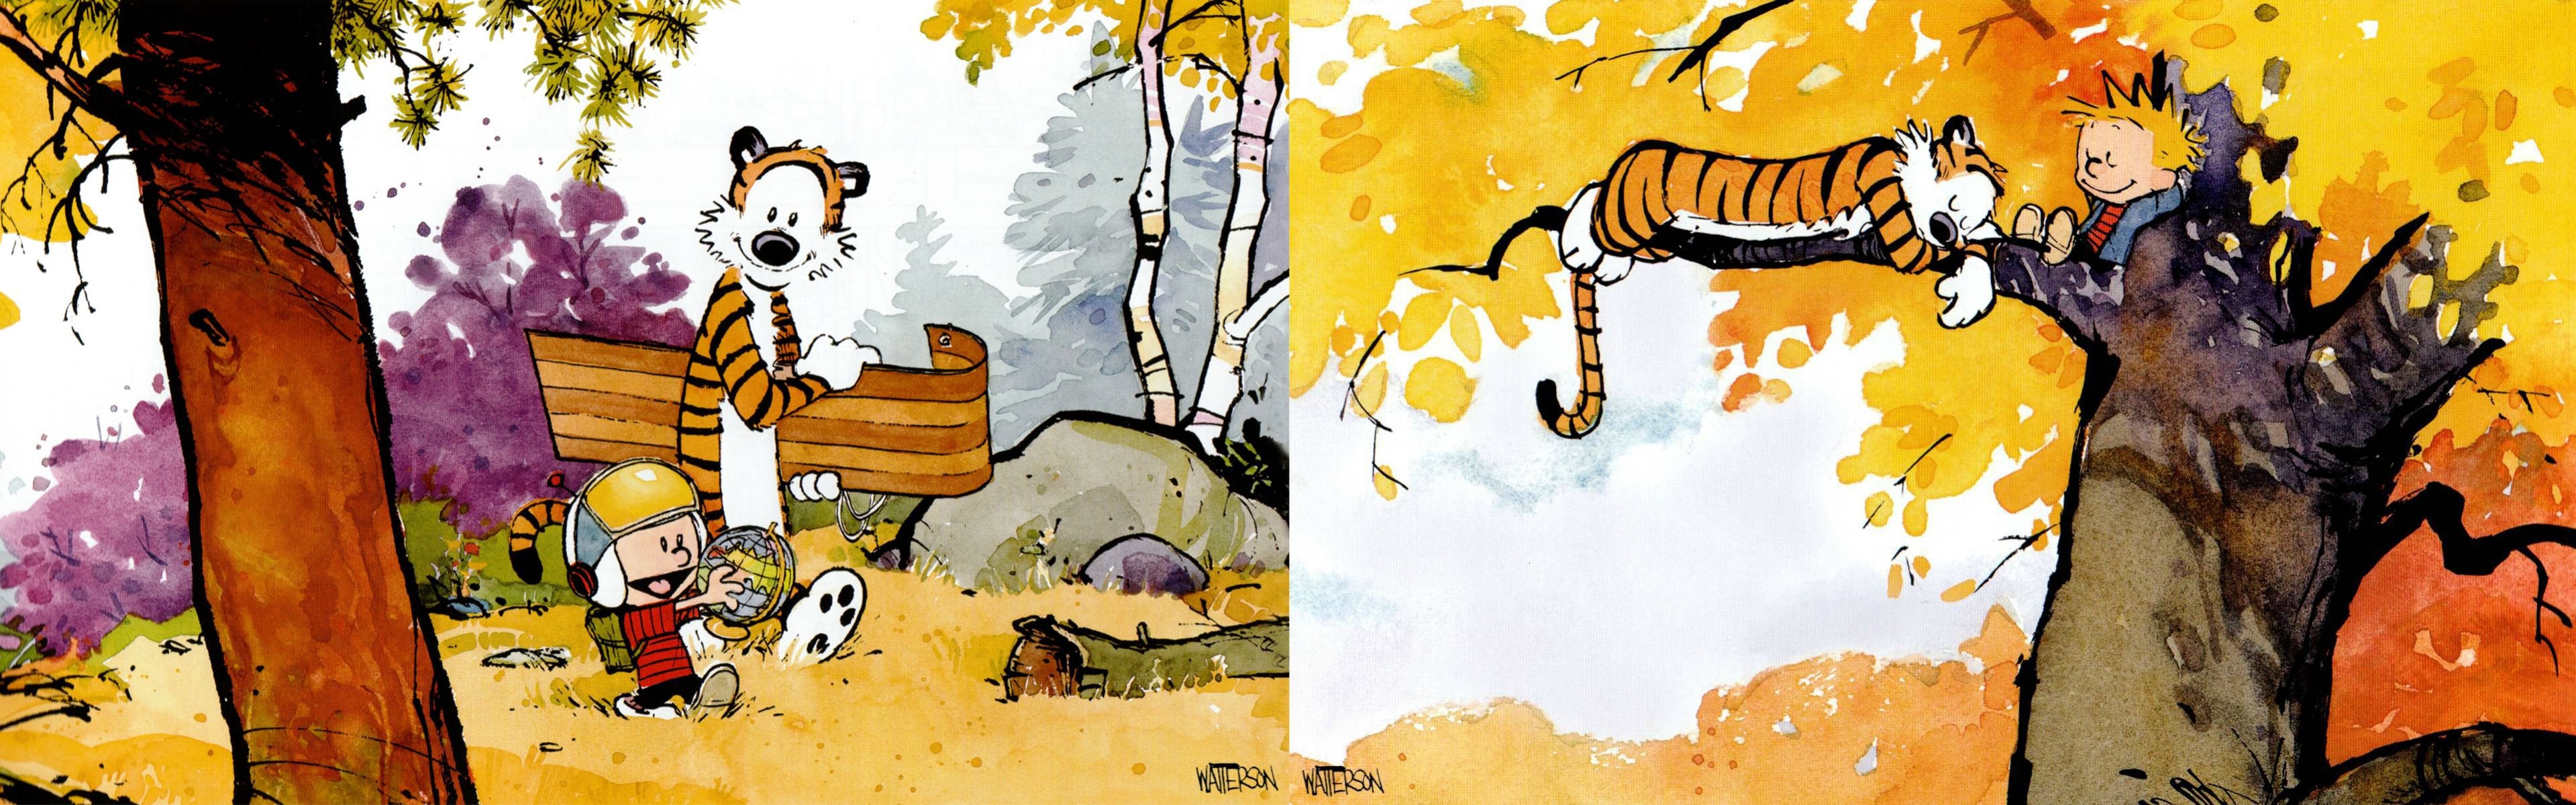 Calvin And Hobbes Dual Screen Wallpaper